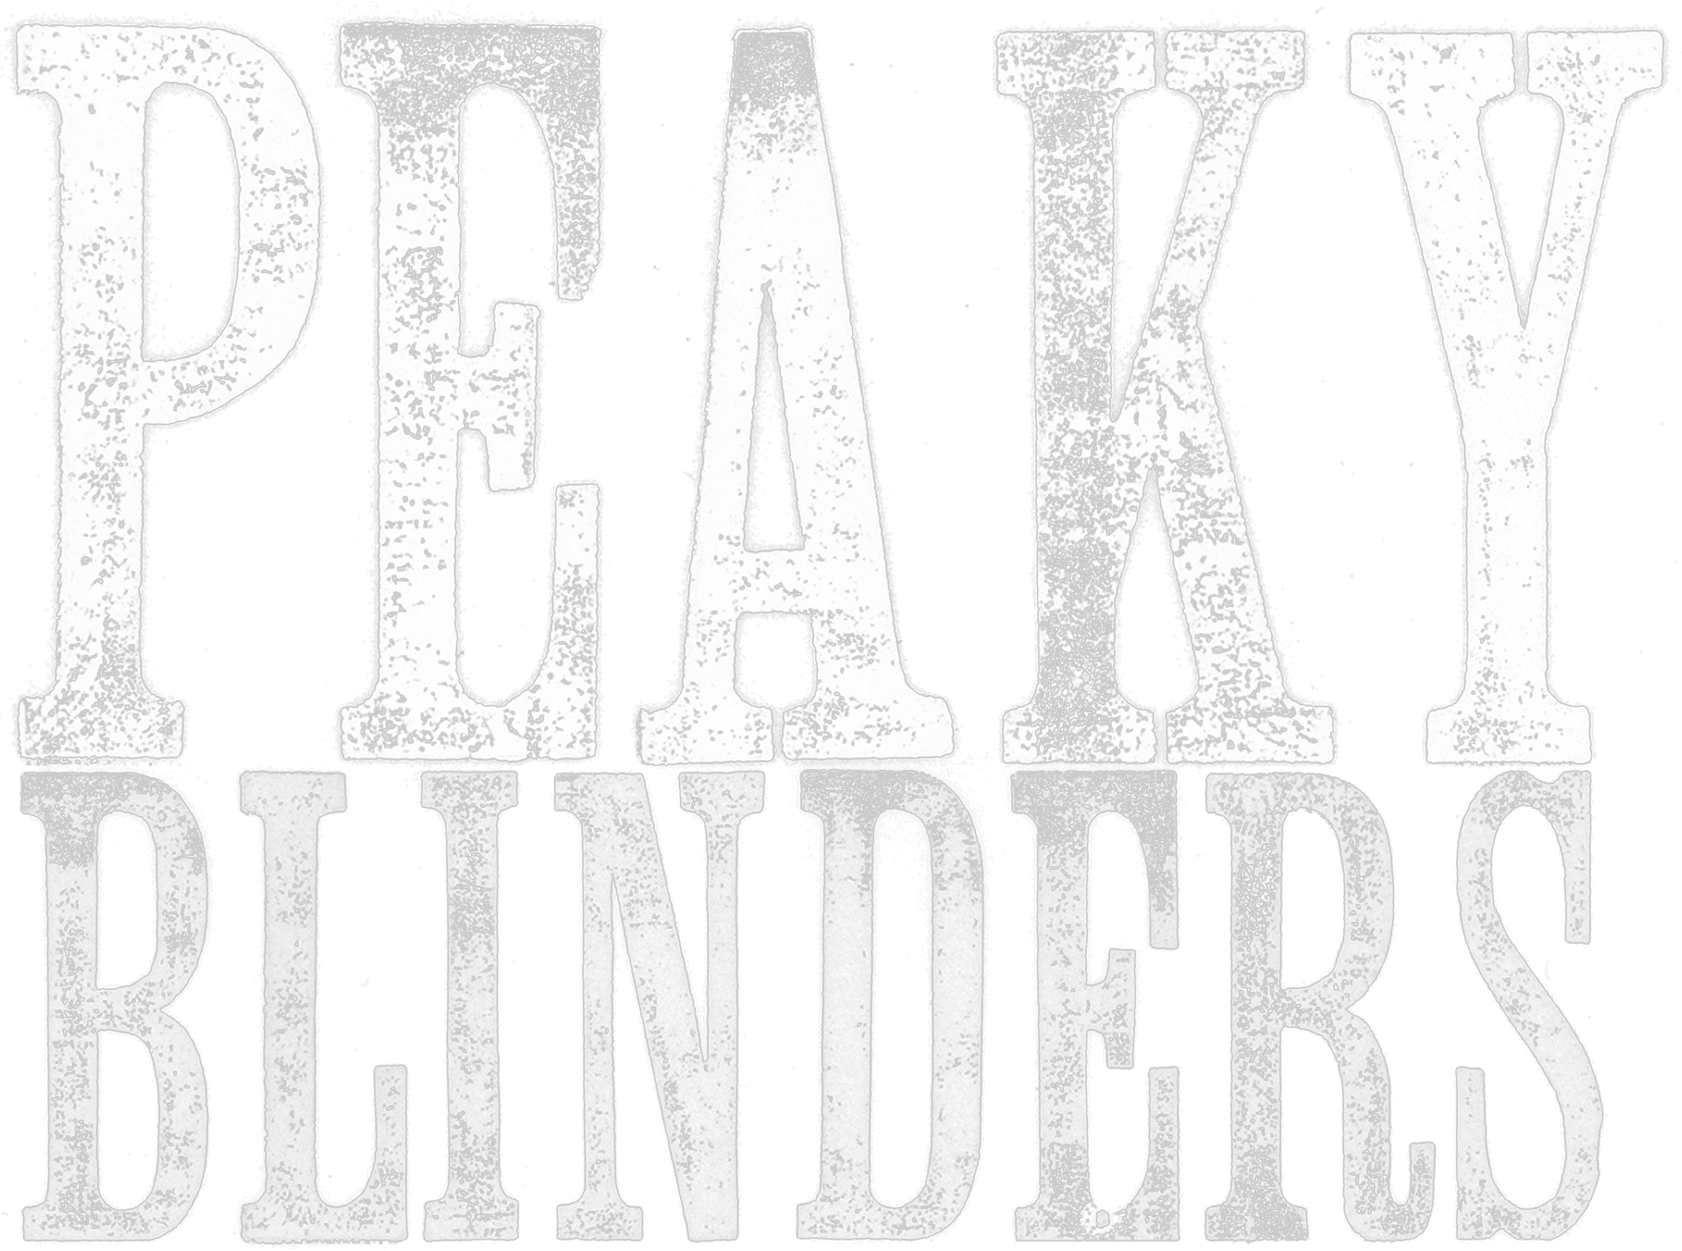 Peaky Blinders logo